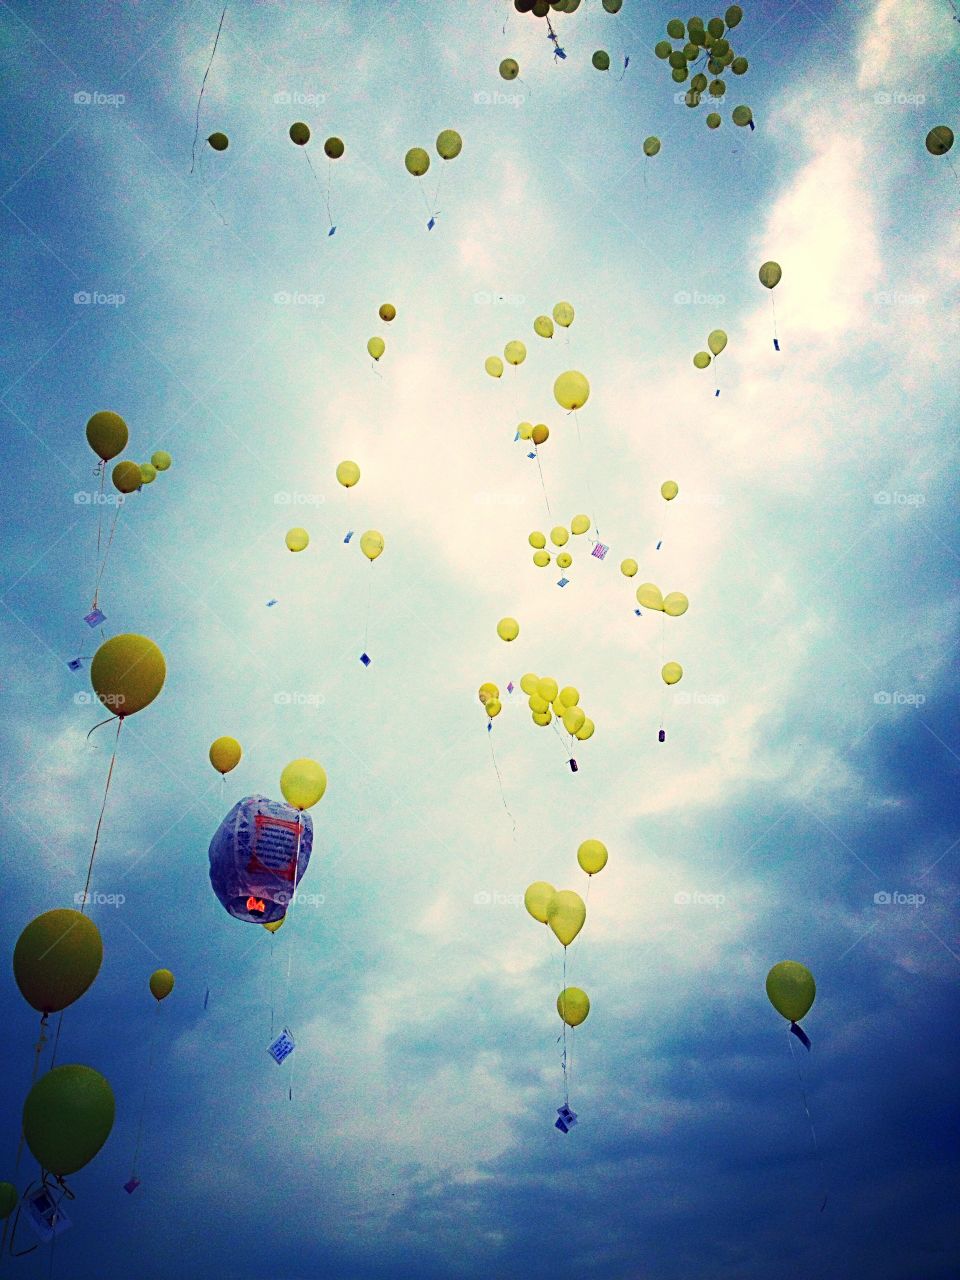 In memory of. Memorial balloons